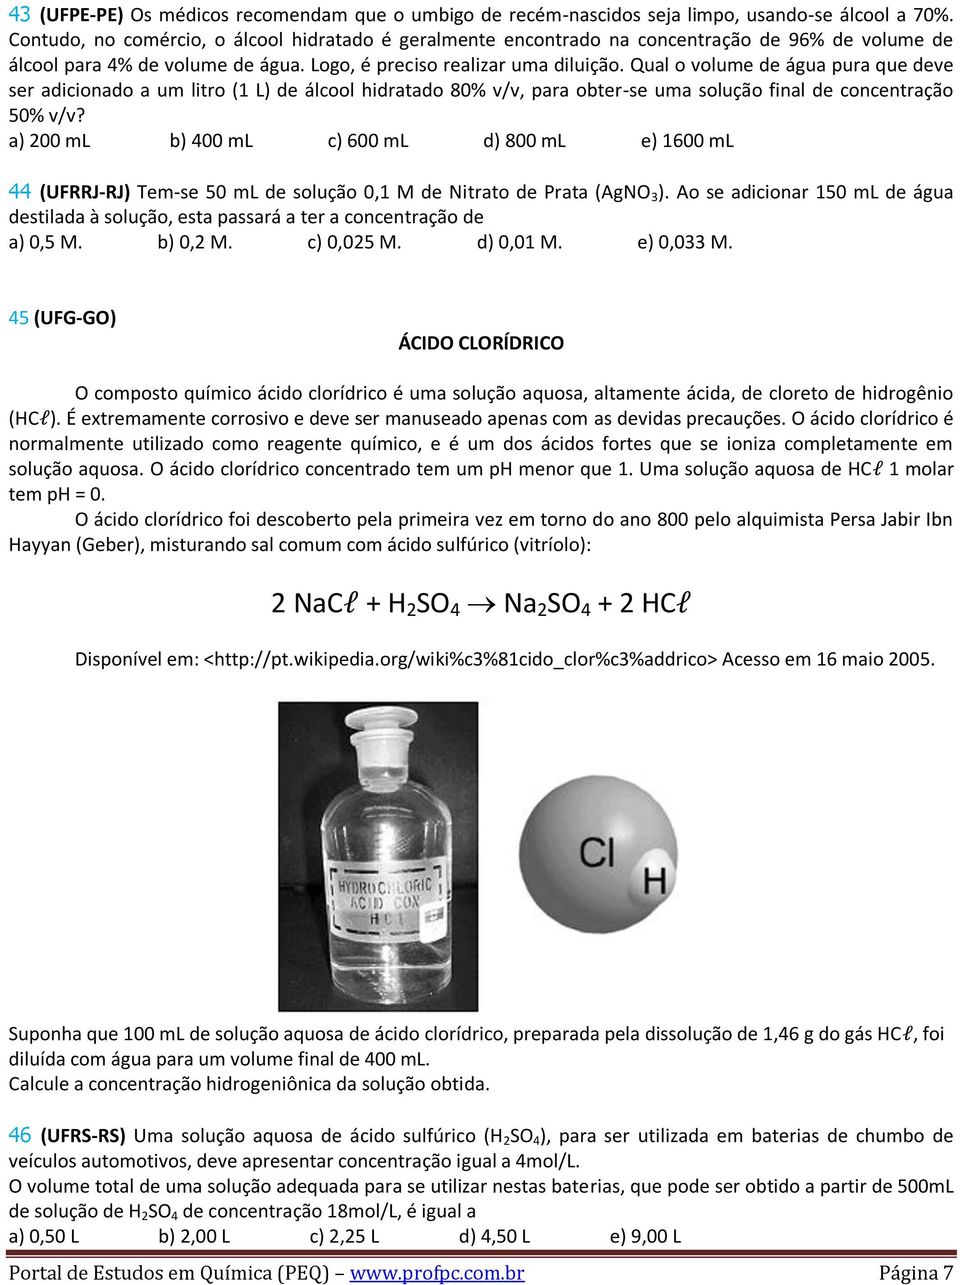 Qual o volume de água pura que deve ser adicionado a um litro (1 L) de álcool hidratado 80% v/v, para obter-se uma solução final de concentração 50% v/v?